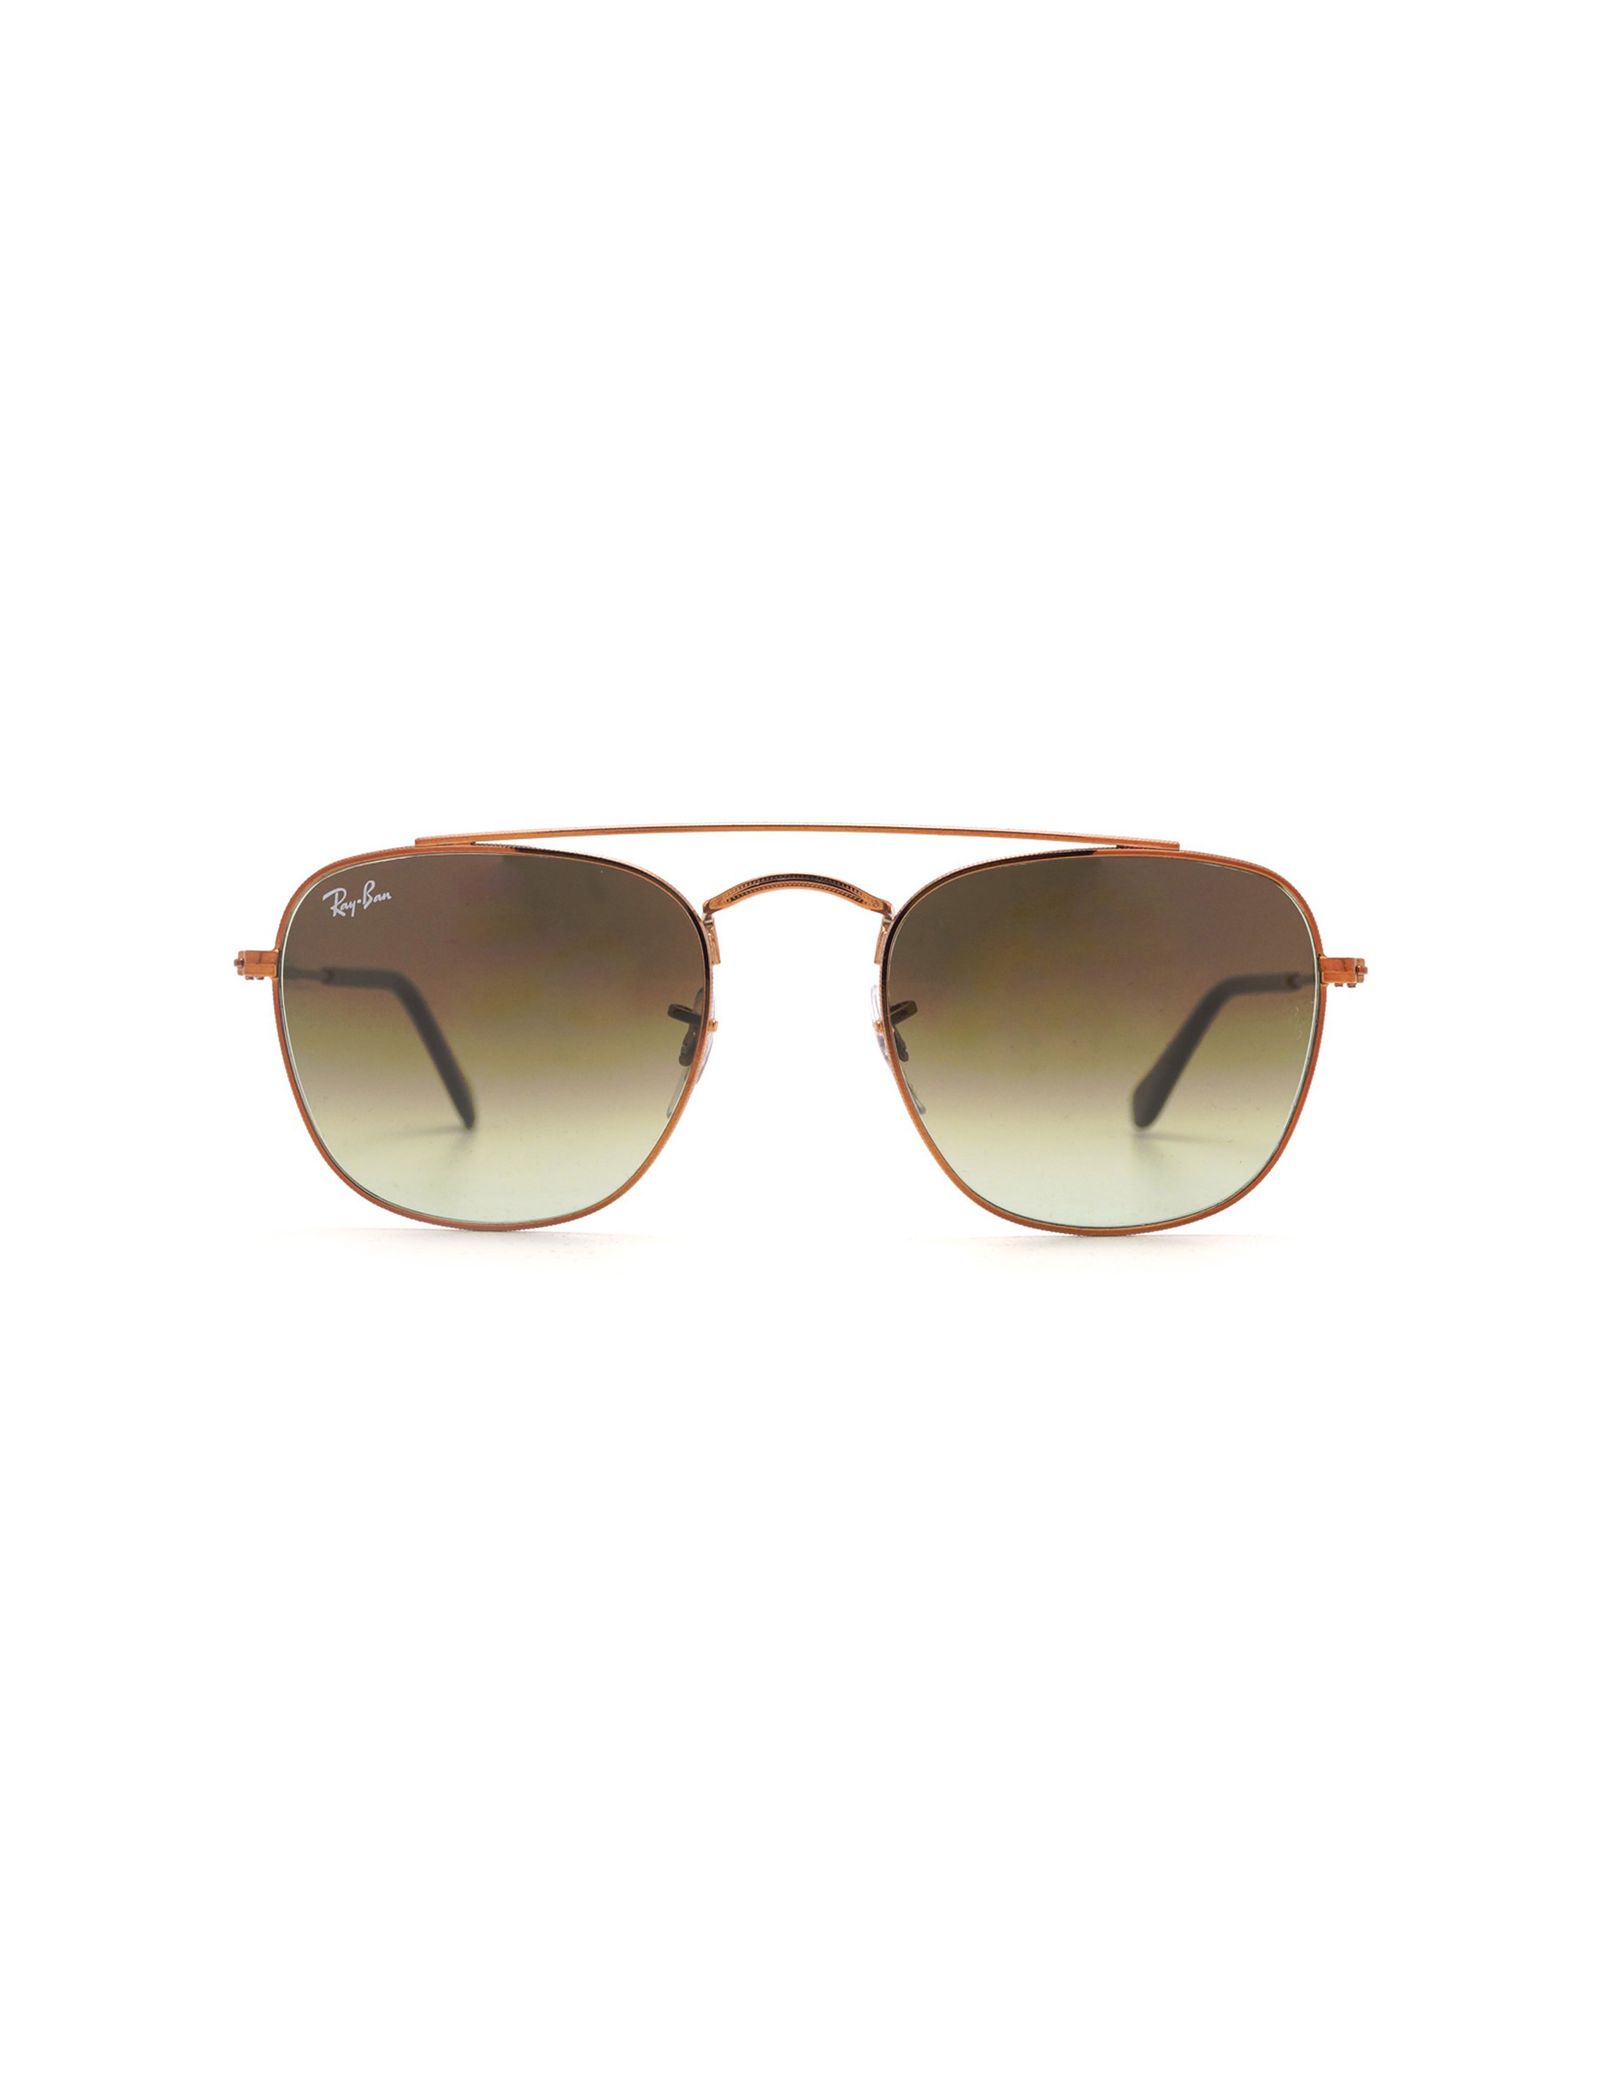 عینک آفتابی ری بن مدل 3557-9001/A5-51 - طلایی - 2